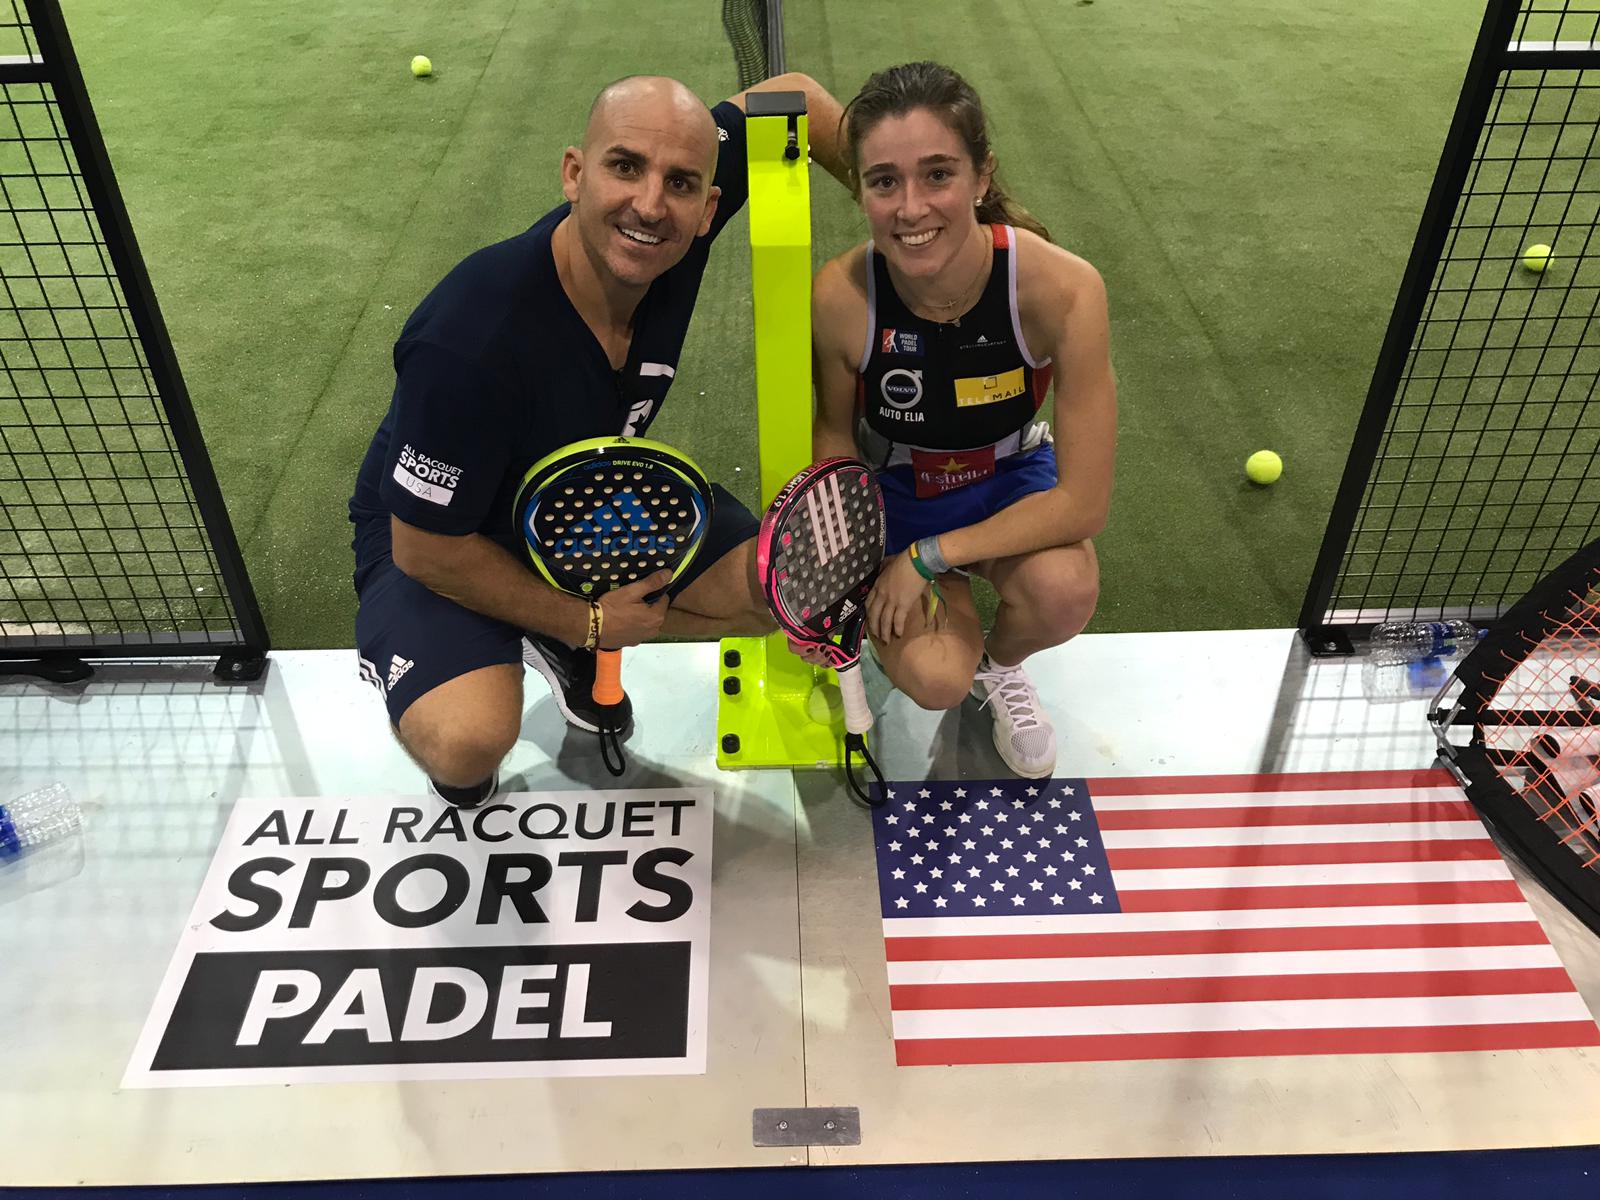 El Racquet Paddle Sport Conference presenta con éxito el pádel en USA